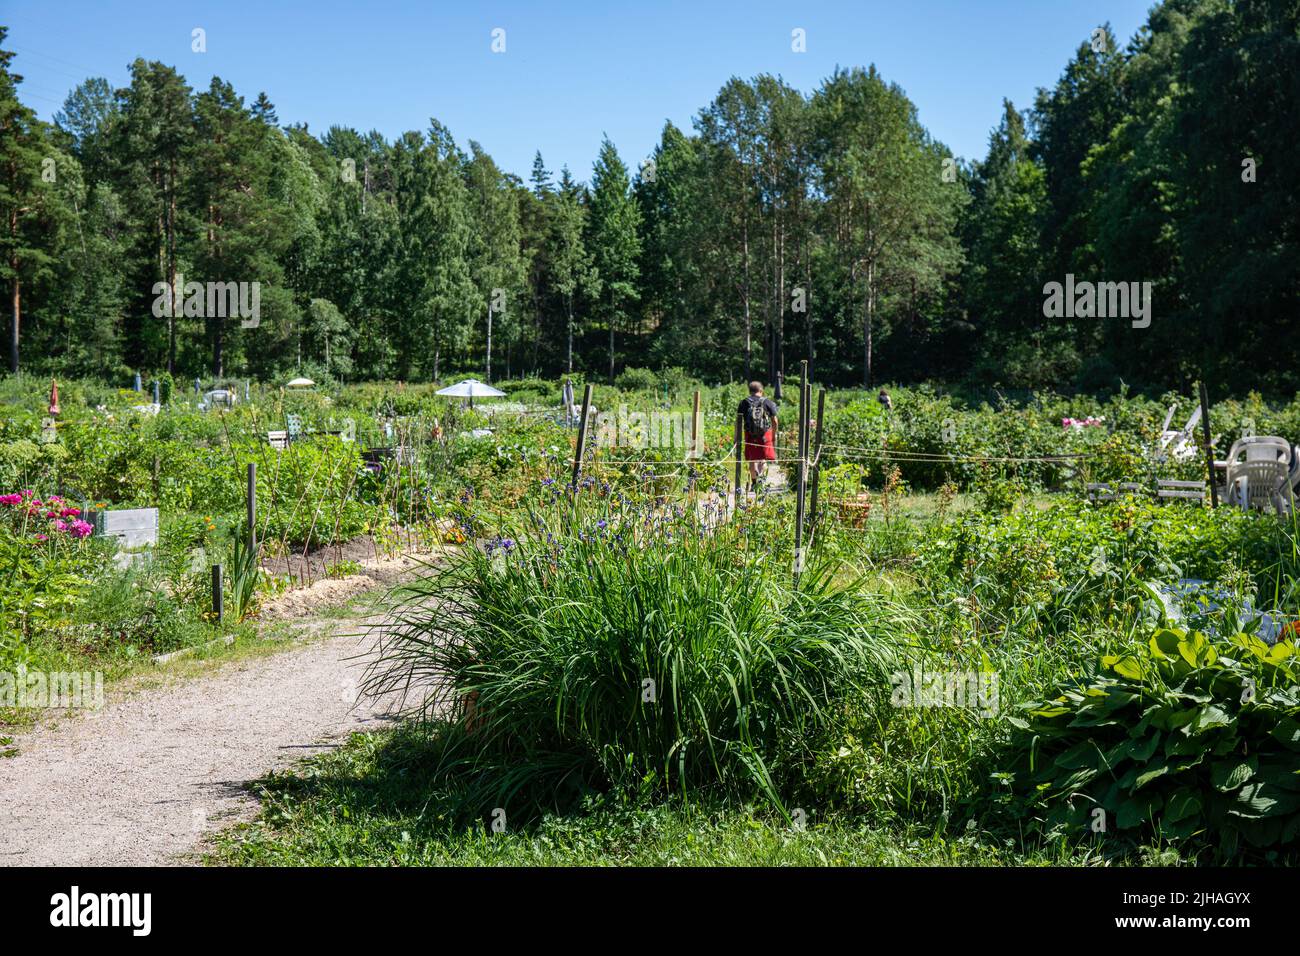 Meilahti allotment garden in Vähä-Meilahti district of Helsinki, Finland Stock Photo